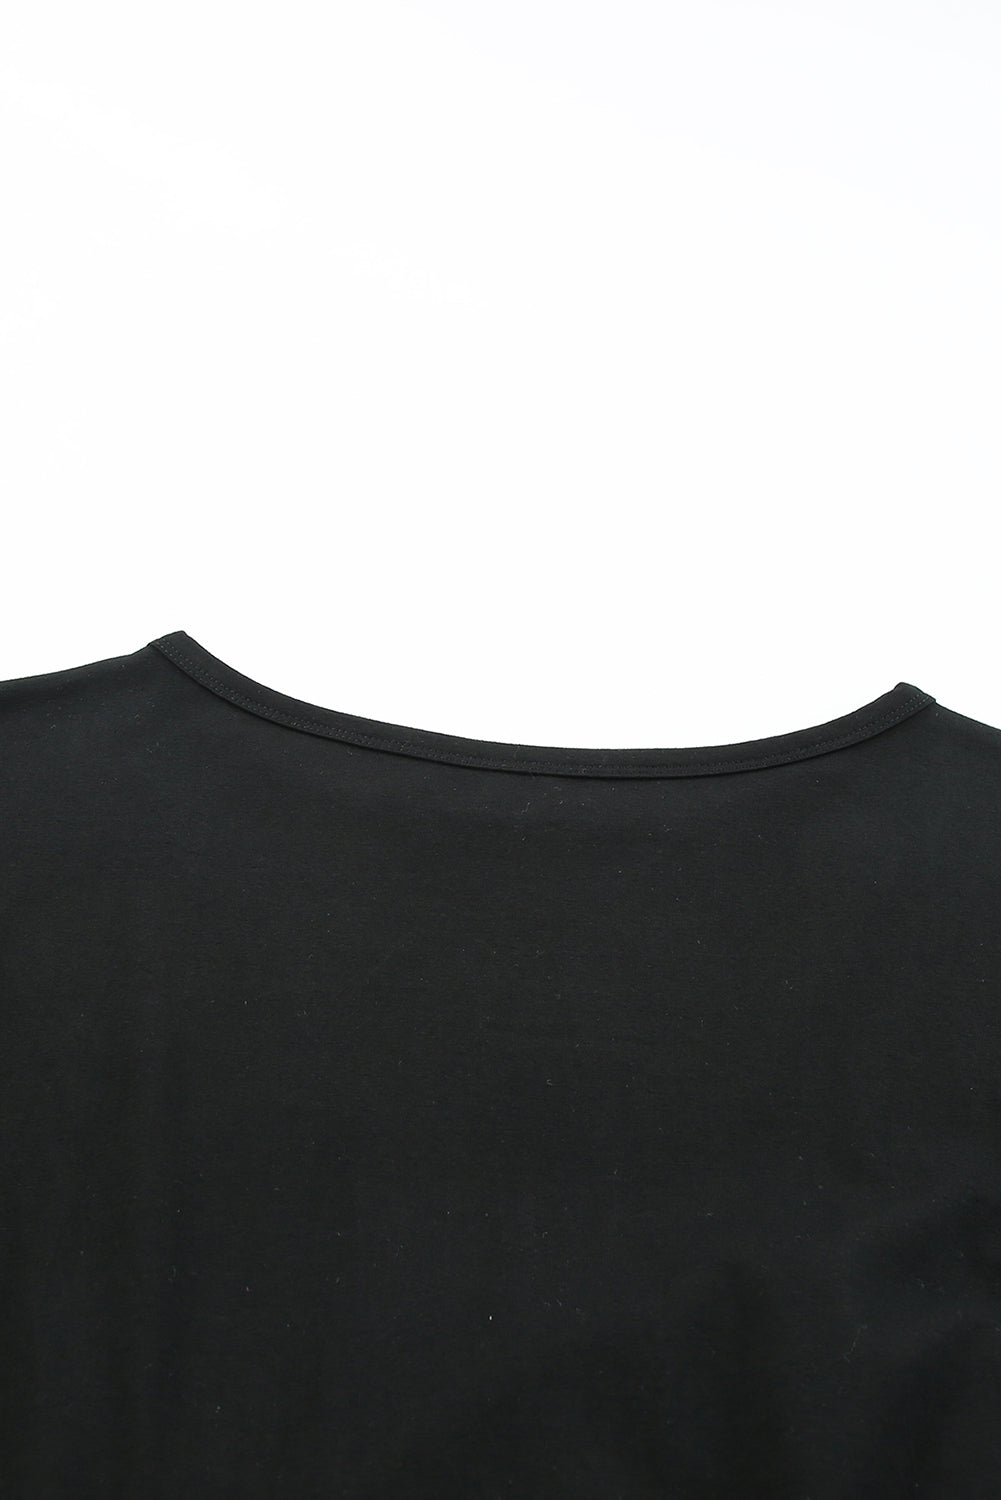 Crna široka majica kratkih rukava s džepovima na prsima, mini haljina s naborima